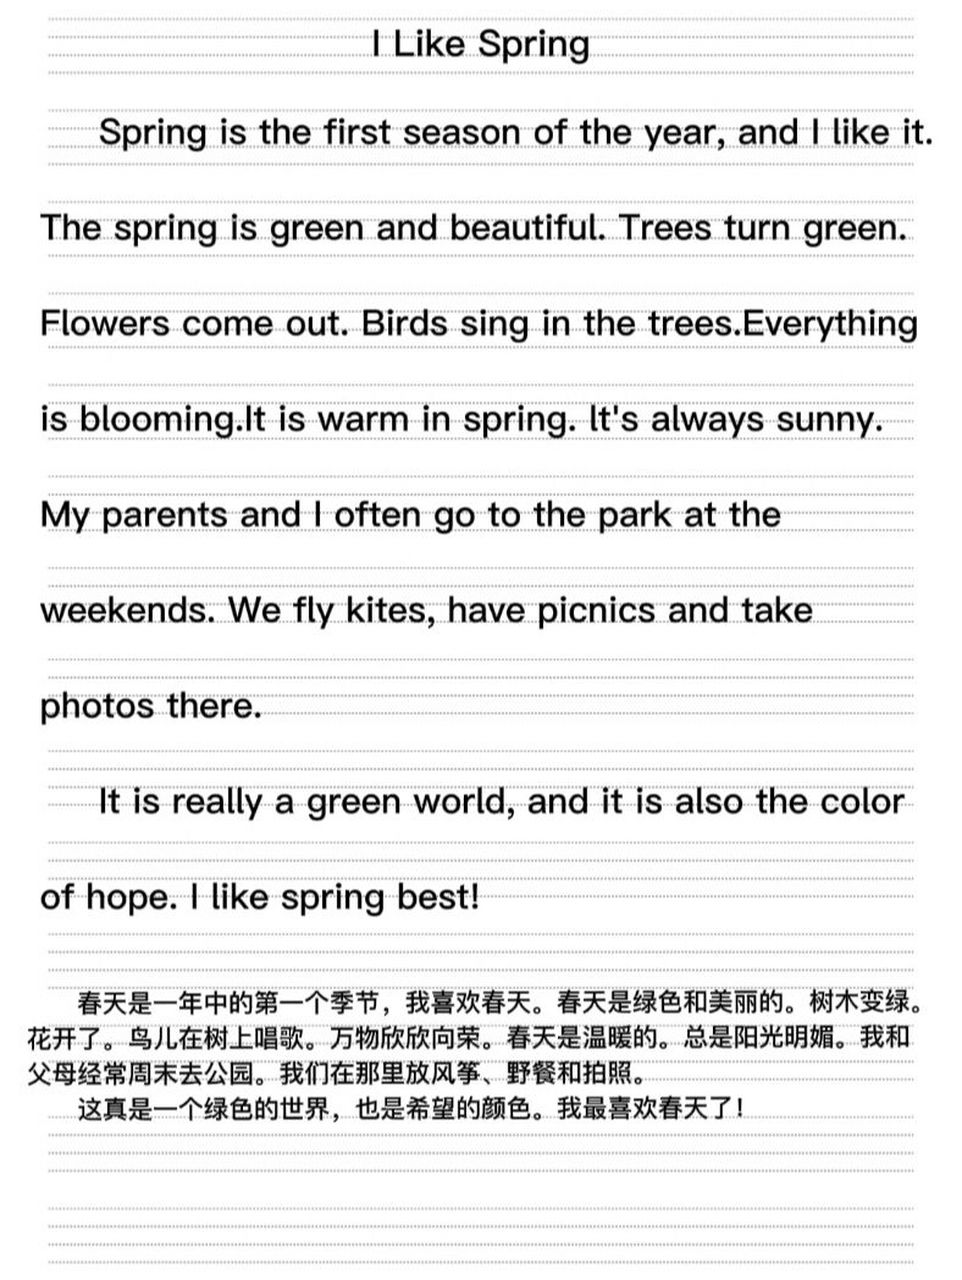 中小学英语作文模板第13篇——我喜欢春天 春天是一个富有生命力的